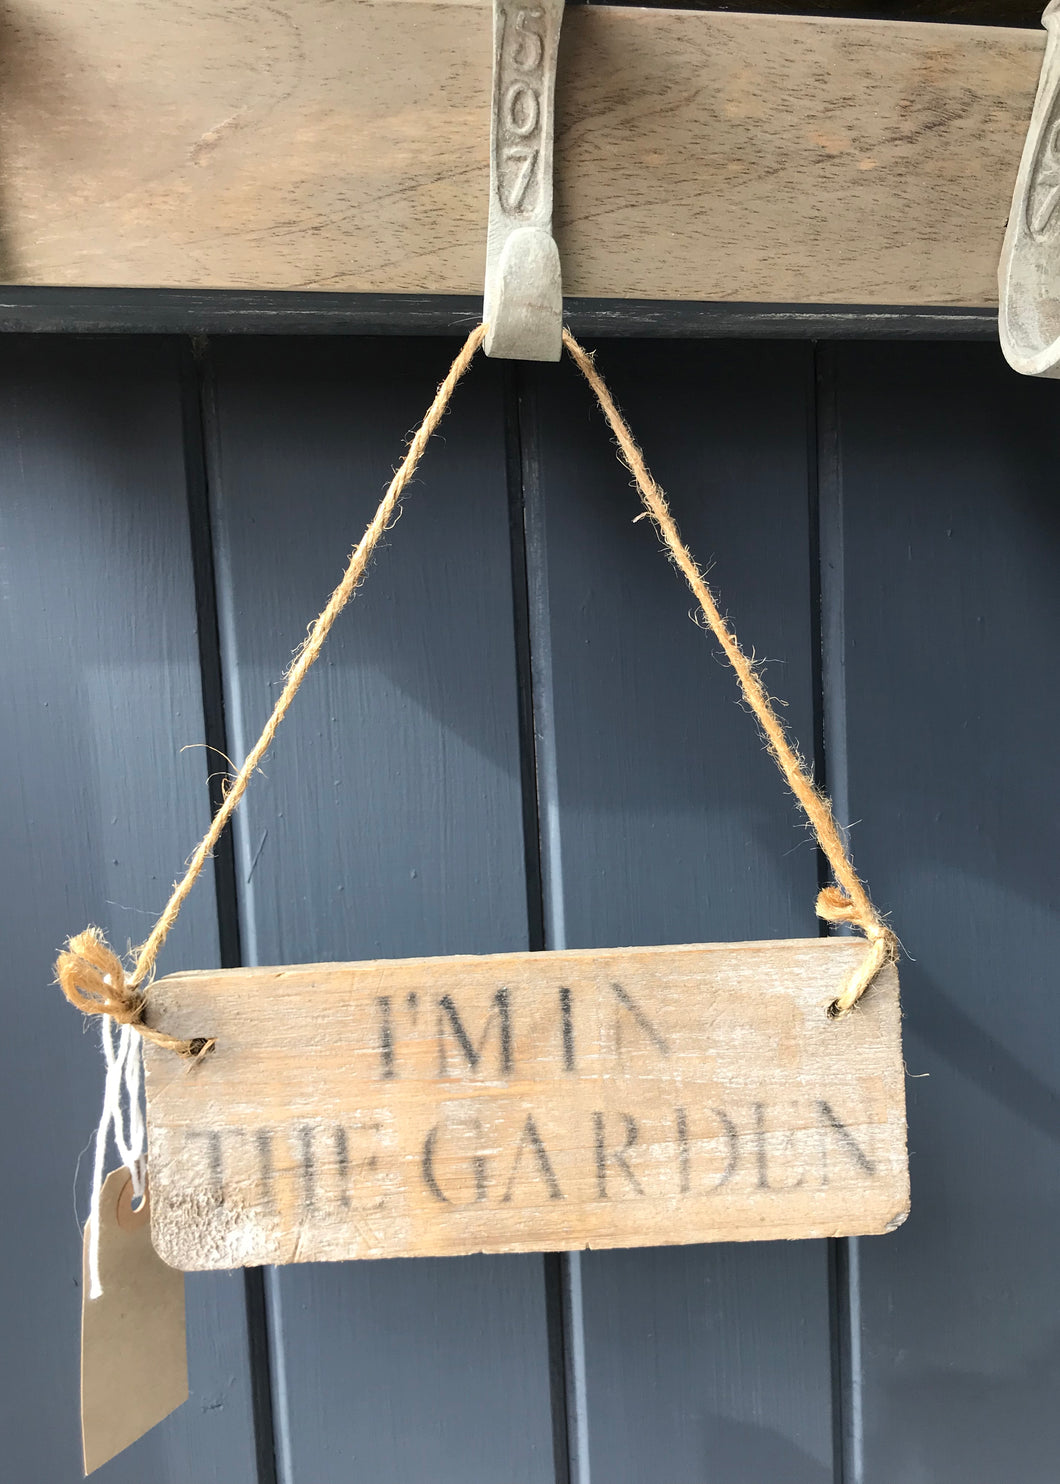 Im In The Garden Wooden Sign